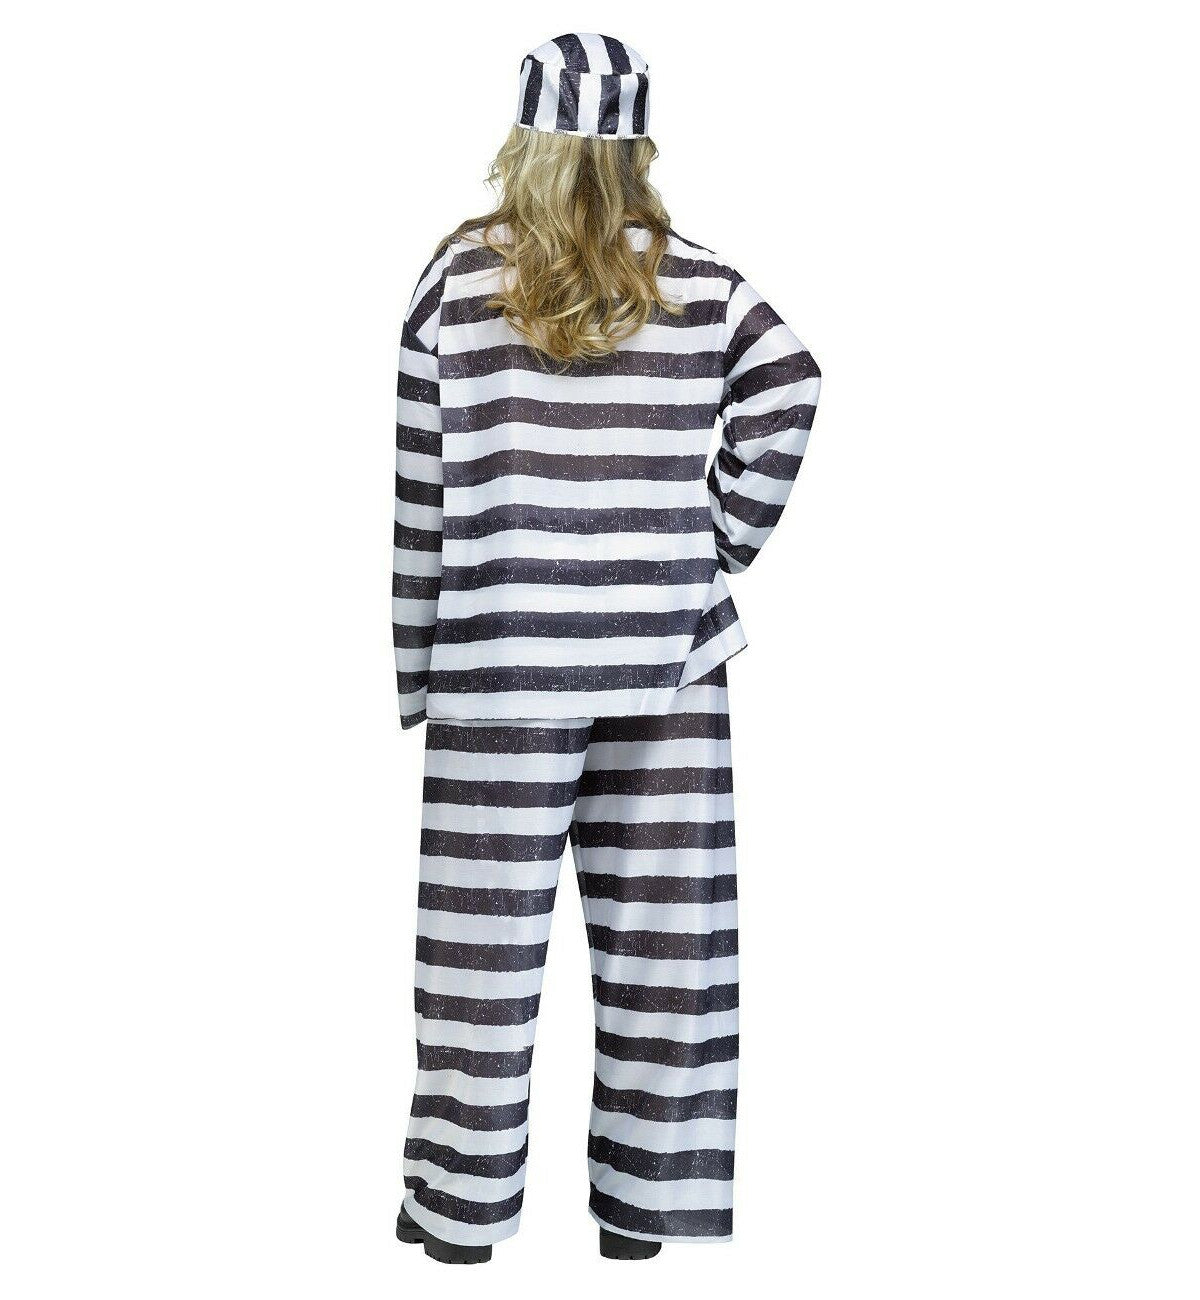 Jailhouse Honey Inmate Convict Prisoner Plus Size Adult Costume